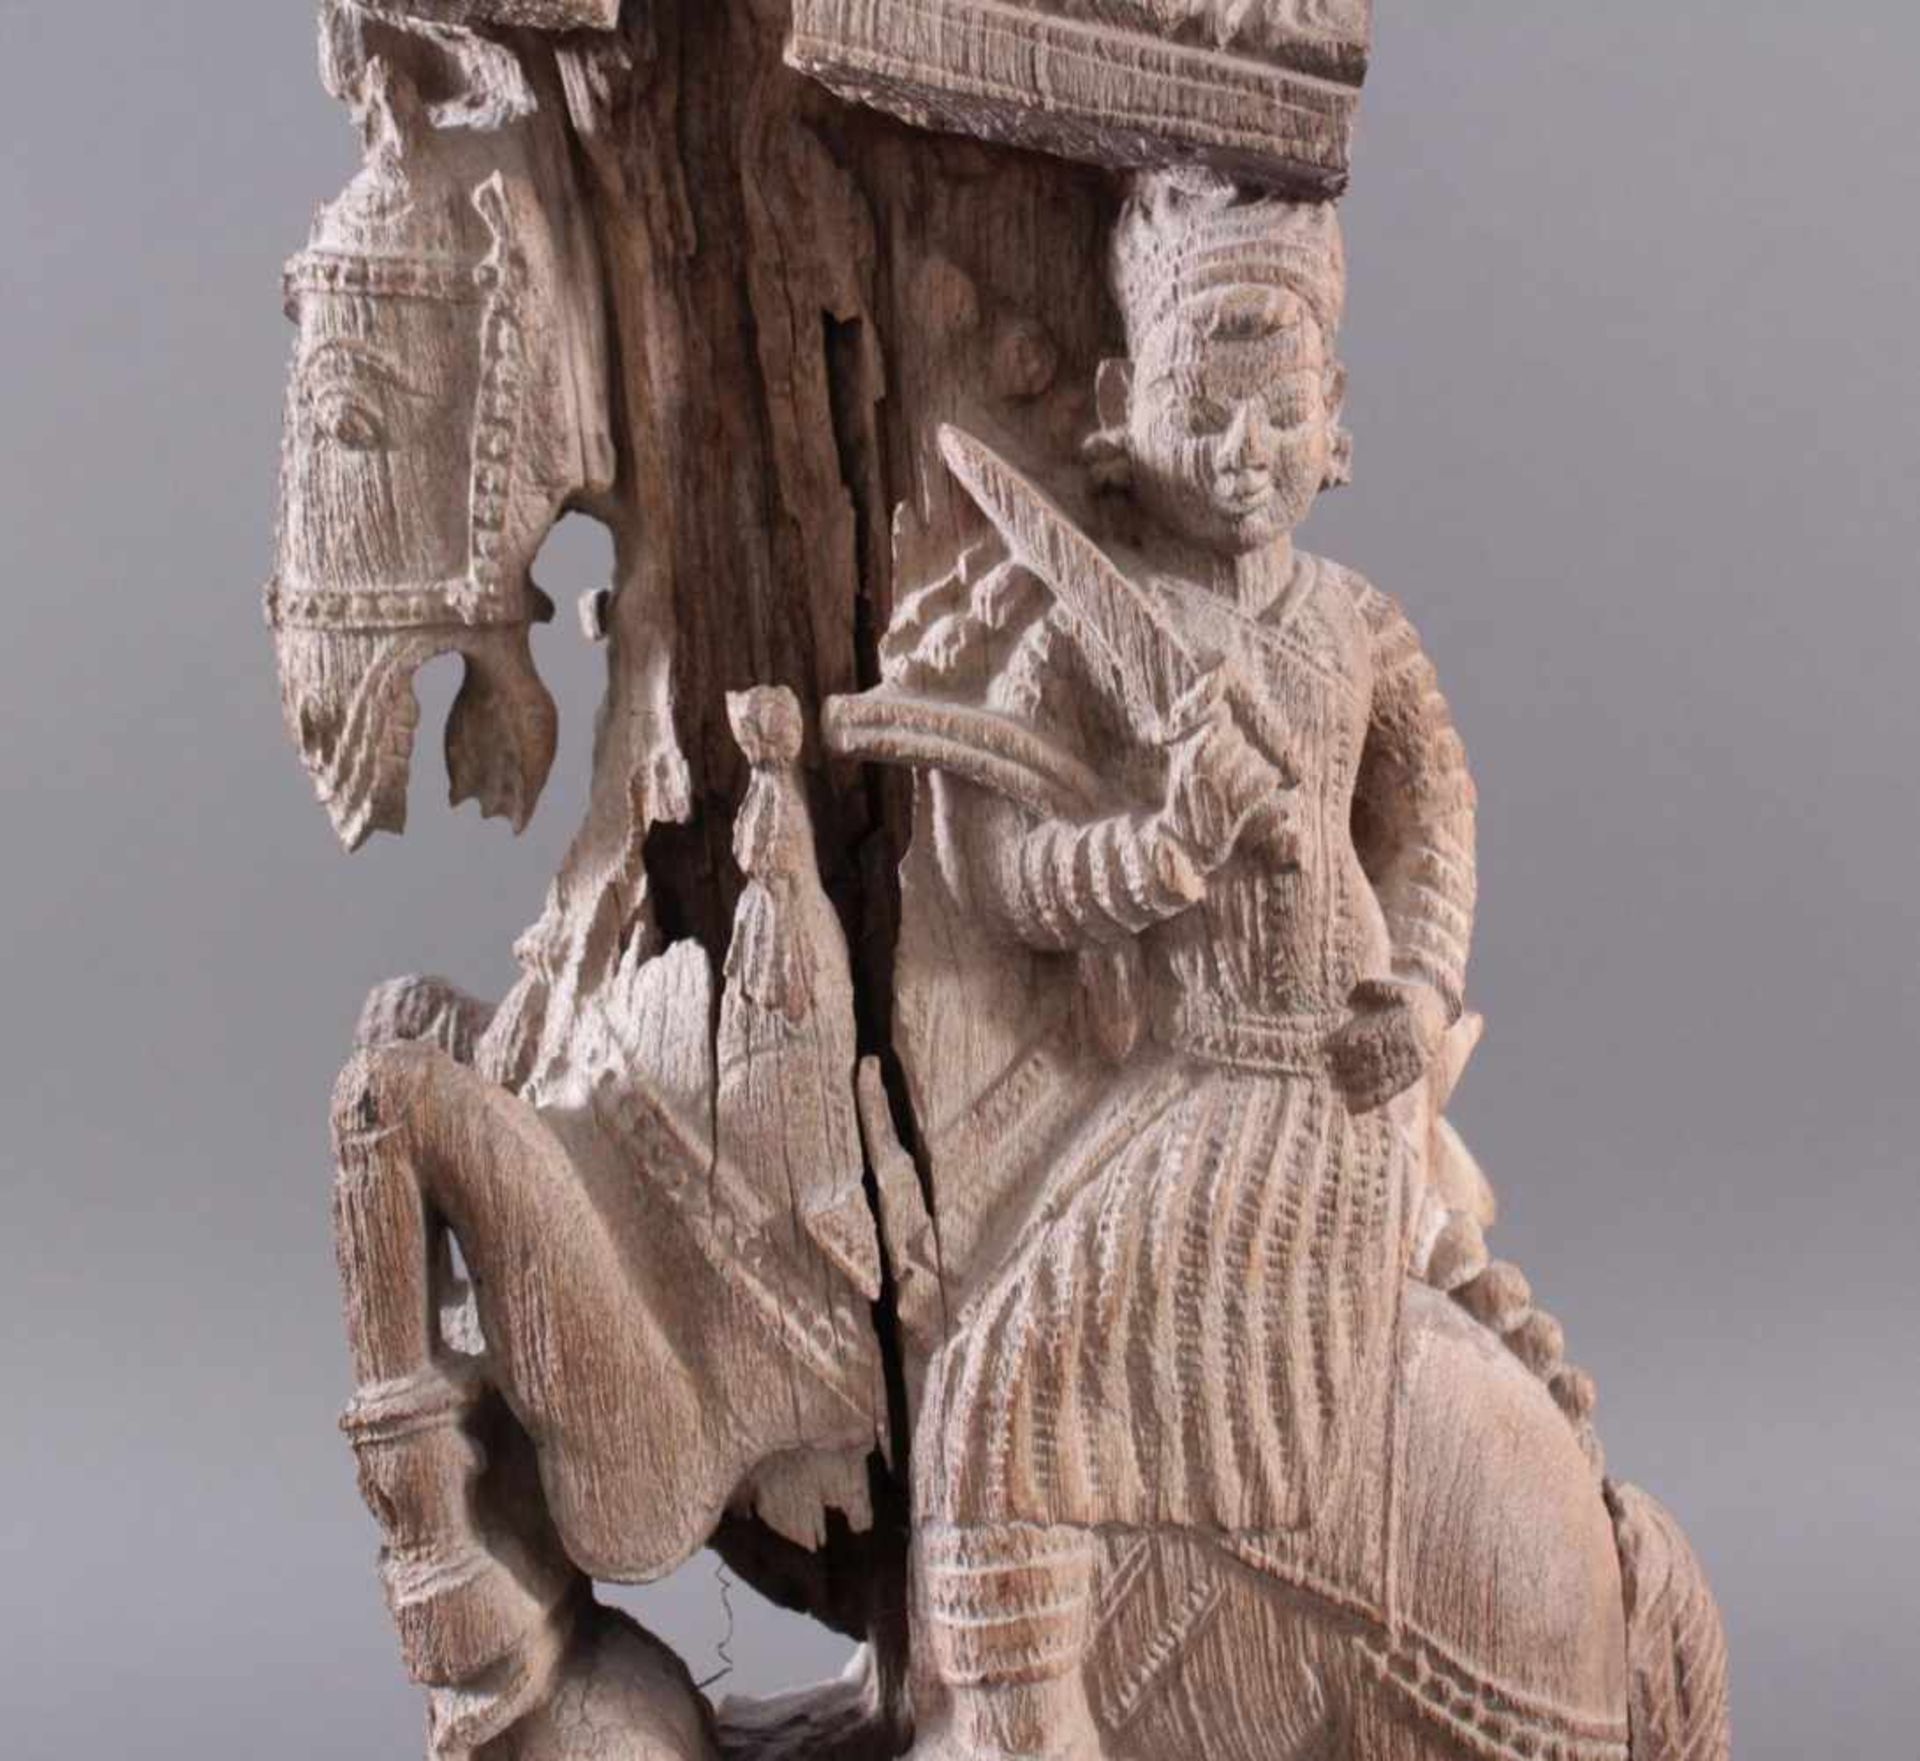 Holzplastik eines Reiters auf einem Pferd, Indien wohl Orissa 15./16. Jh. - Bild 9 aus 13